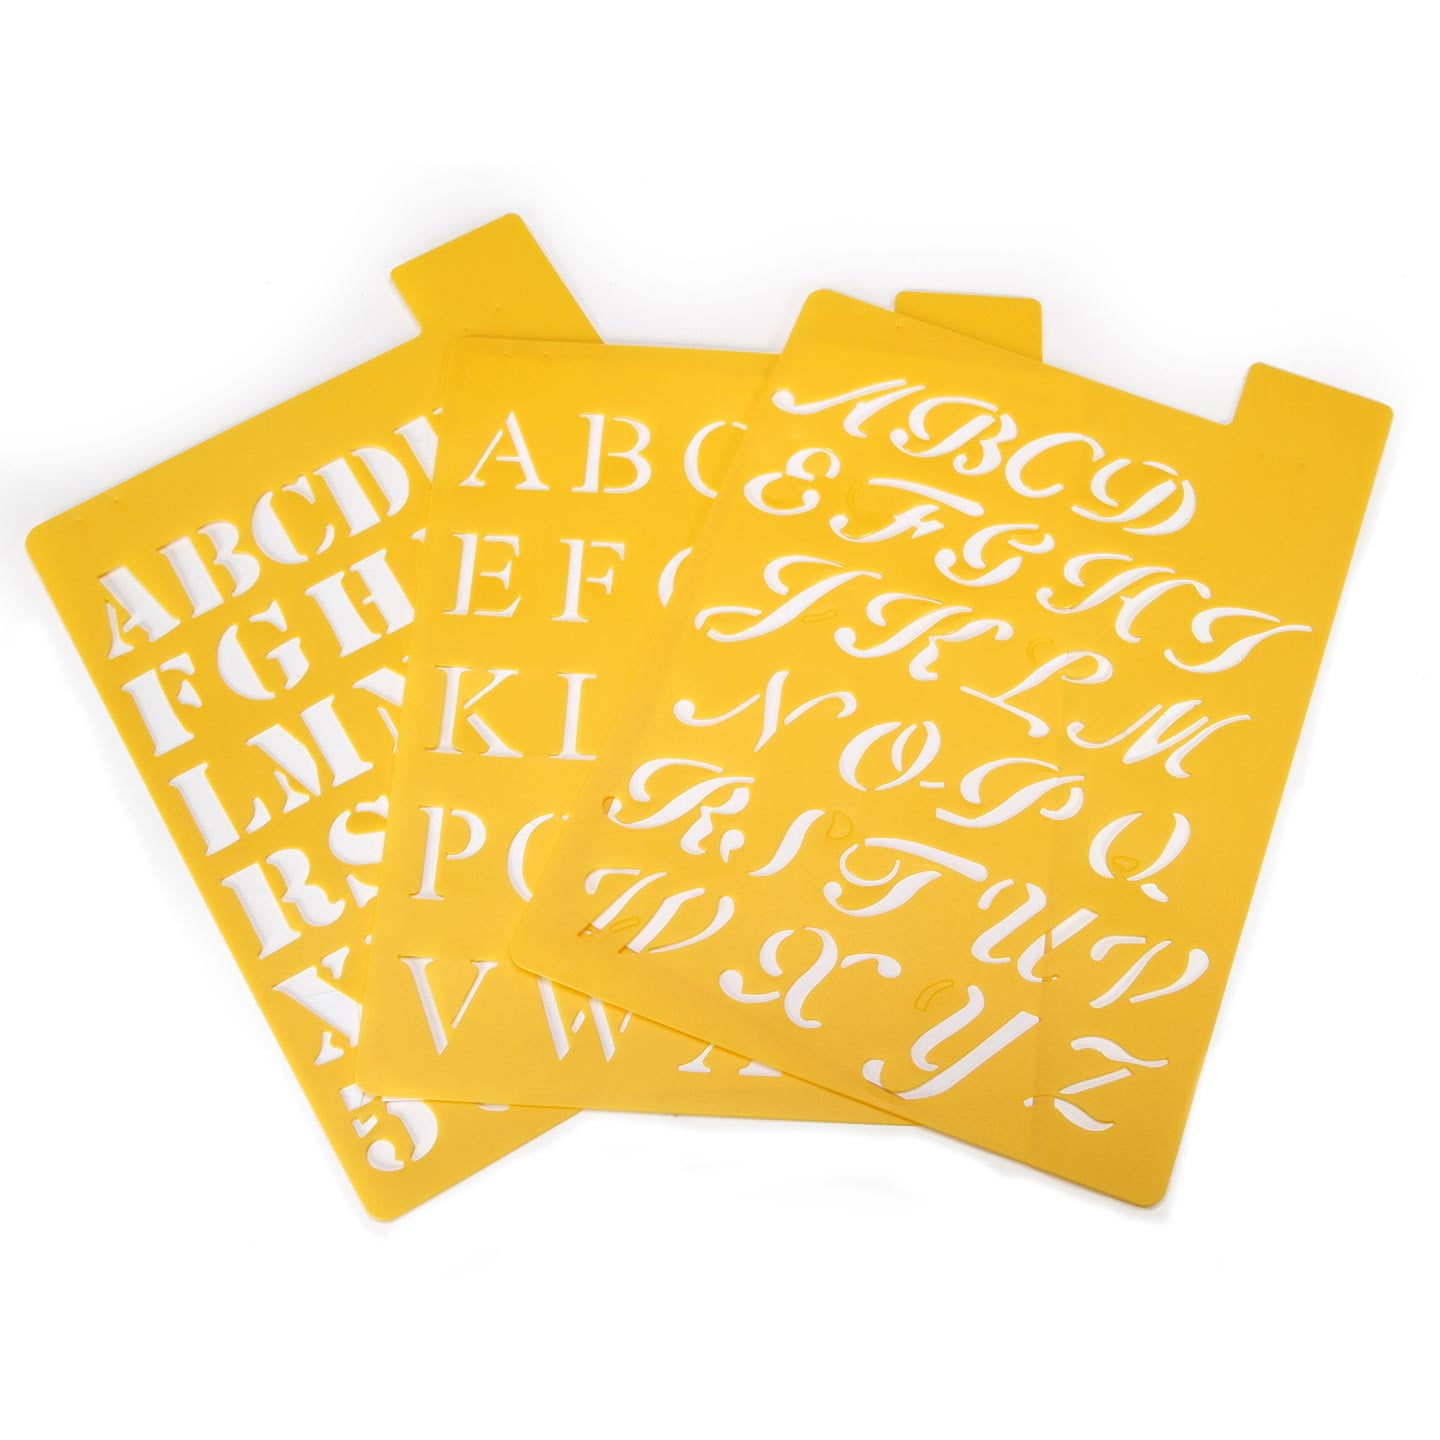 Darice 121725 Upper Case Alphabet Stencil 3 Fonts in 1 1-Inch 